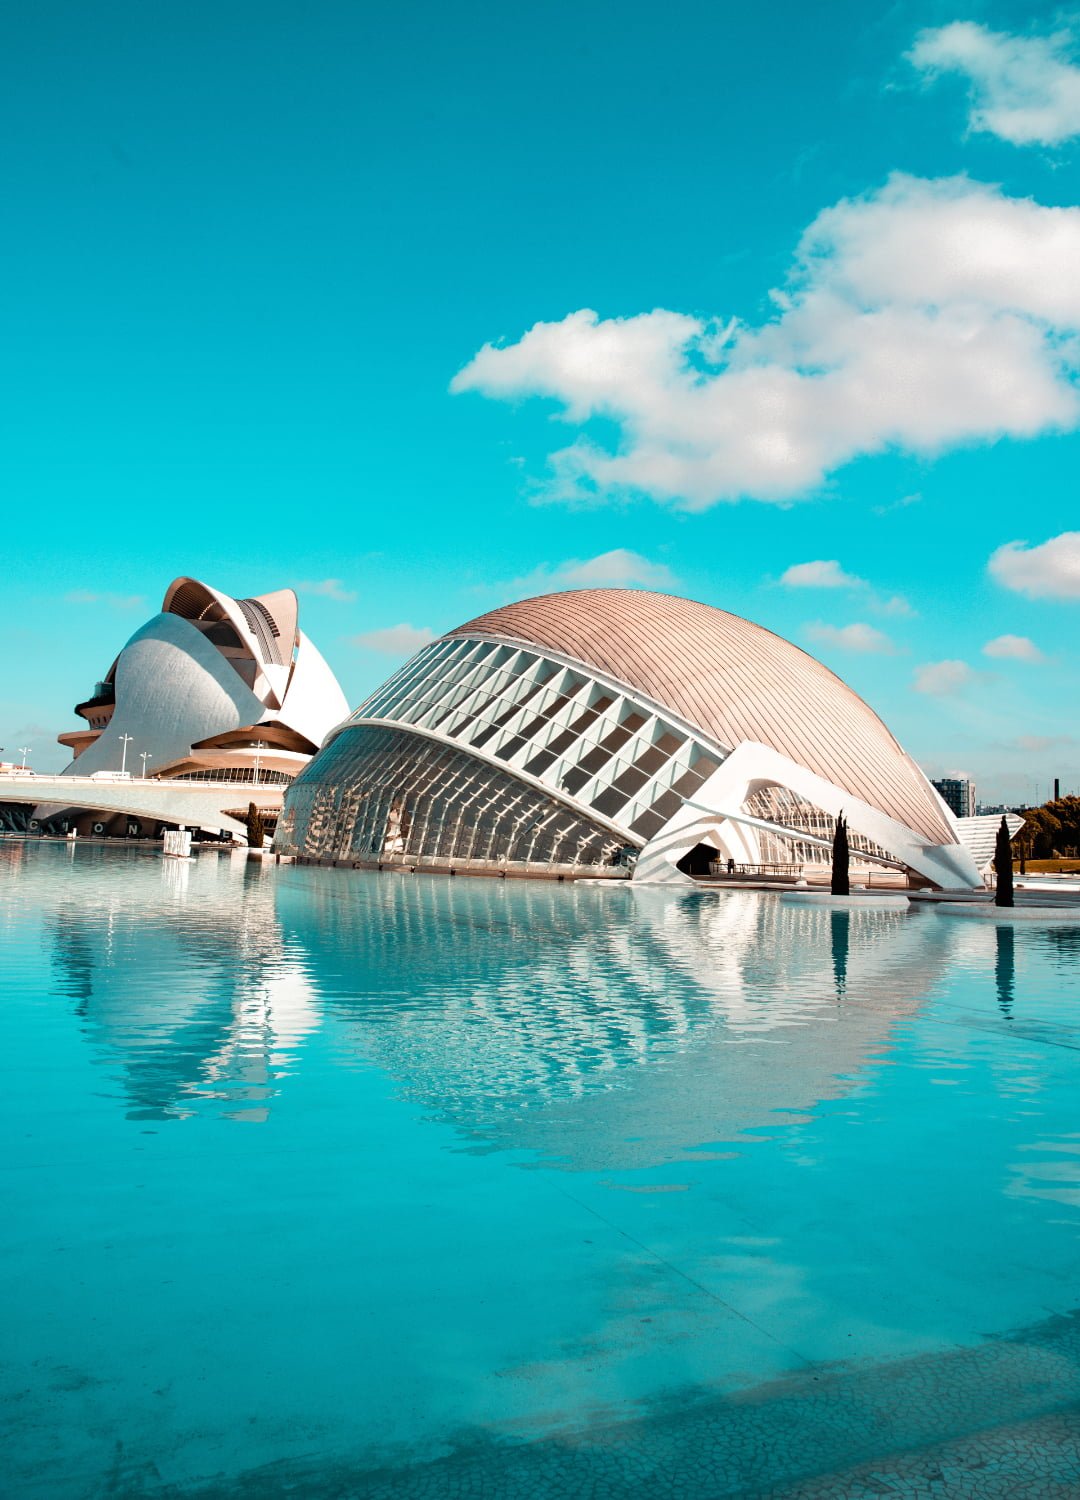 A striking picture of the Ciutat de les Arts i les Ciències, Valencia, España